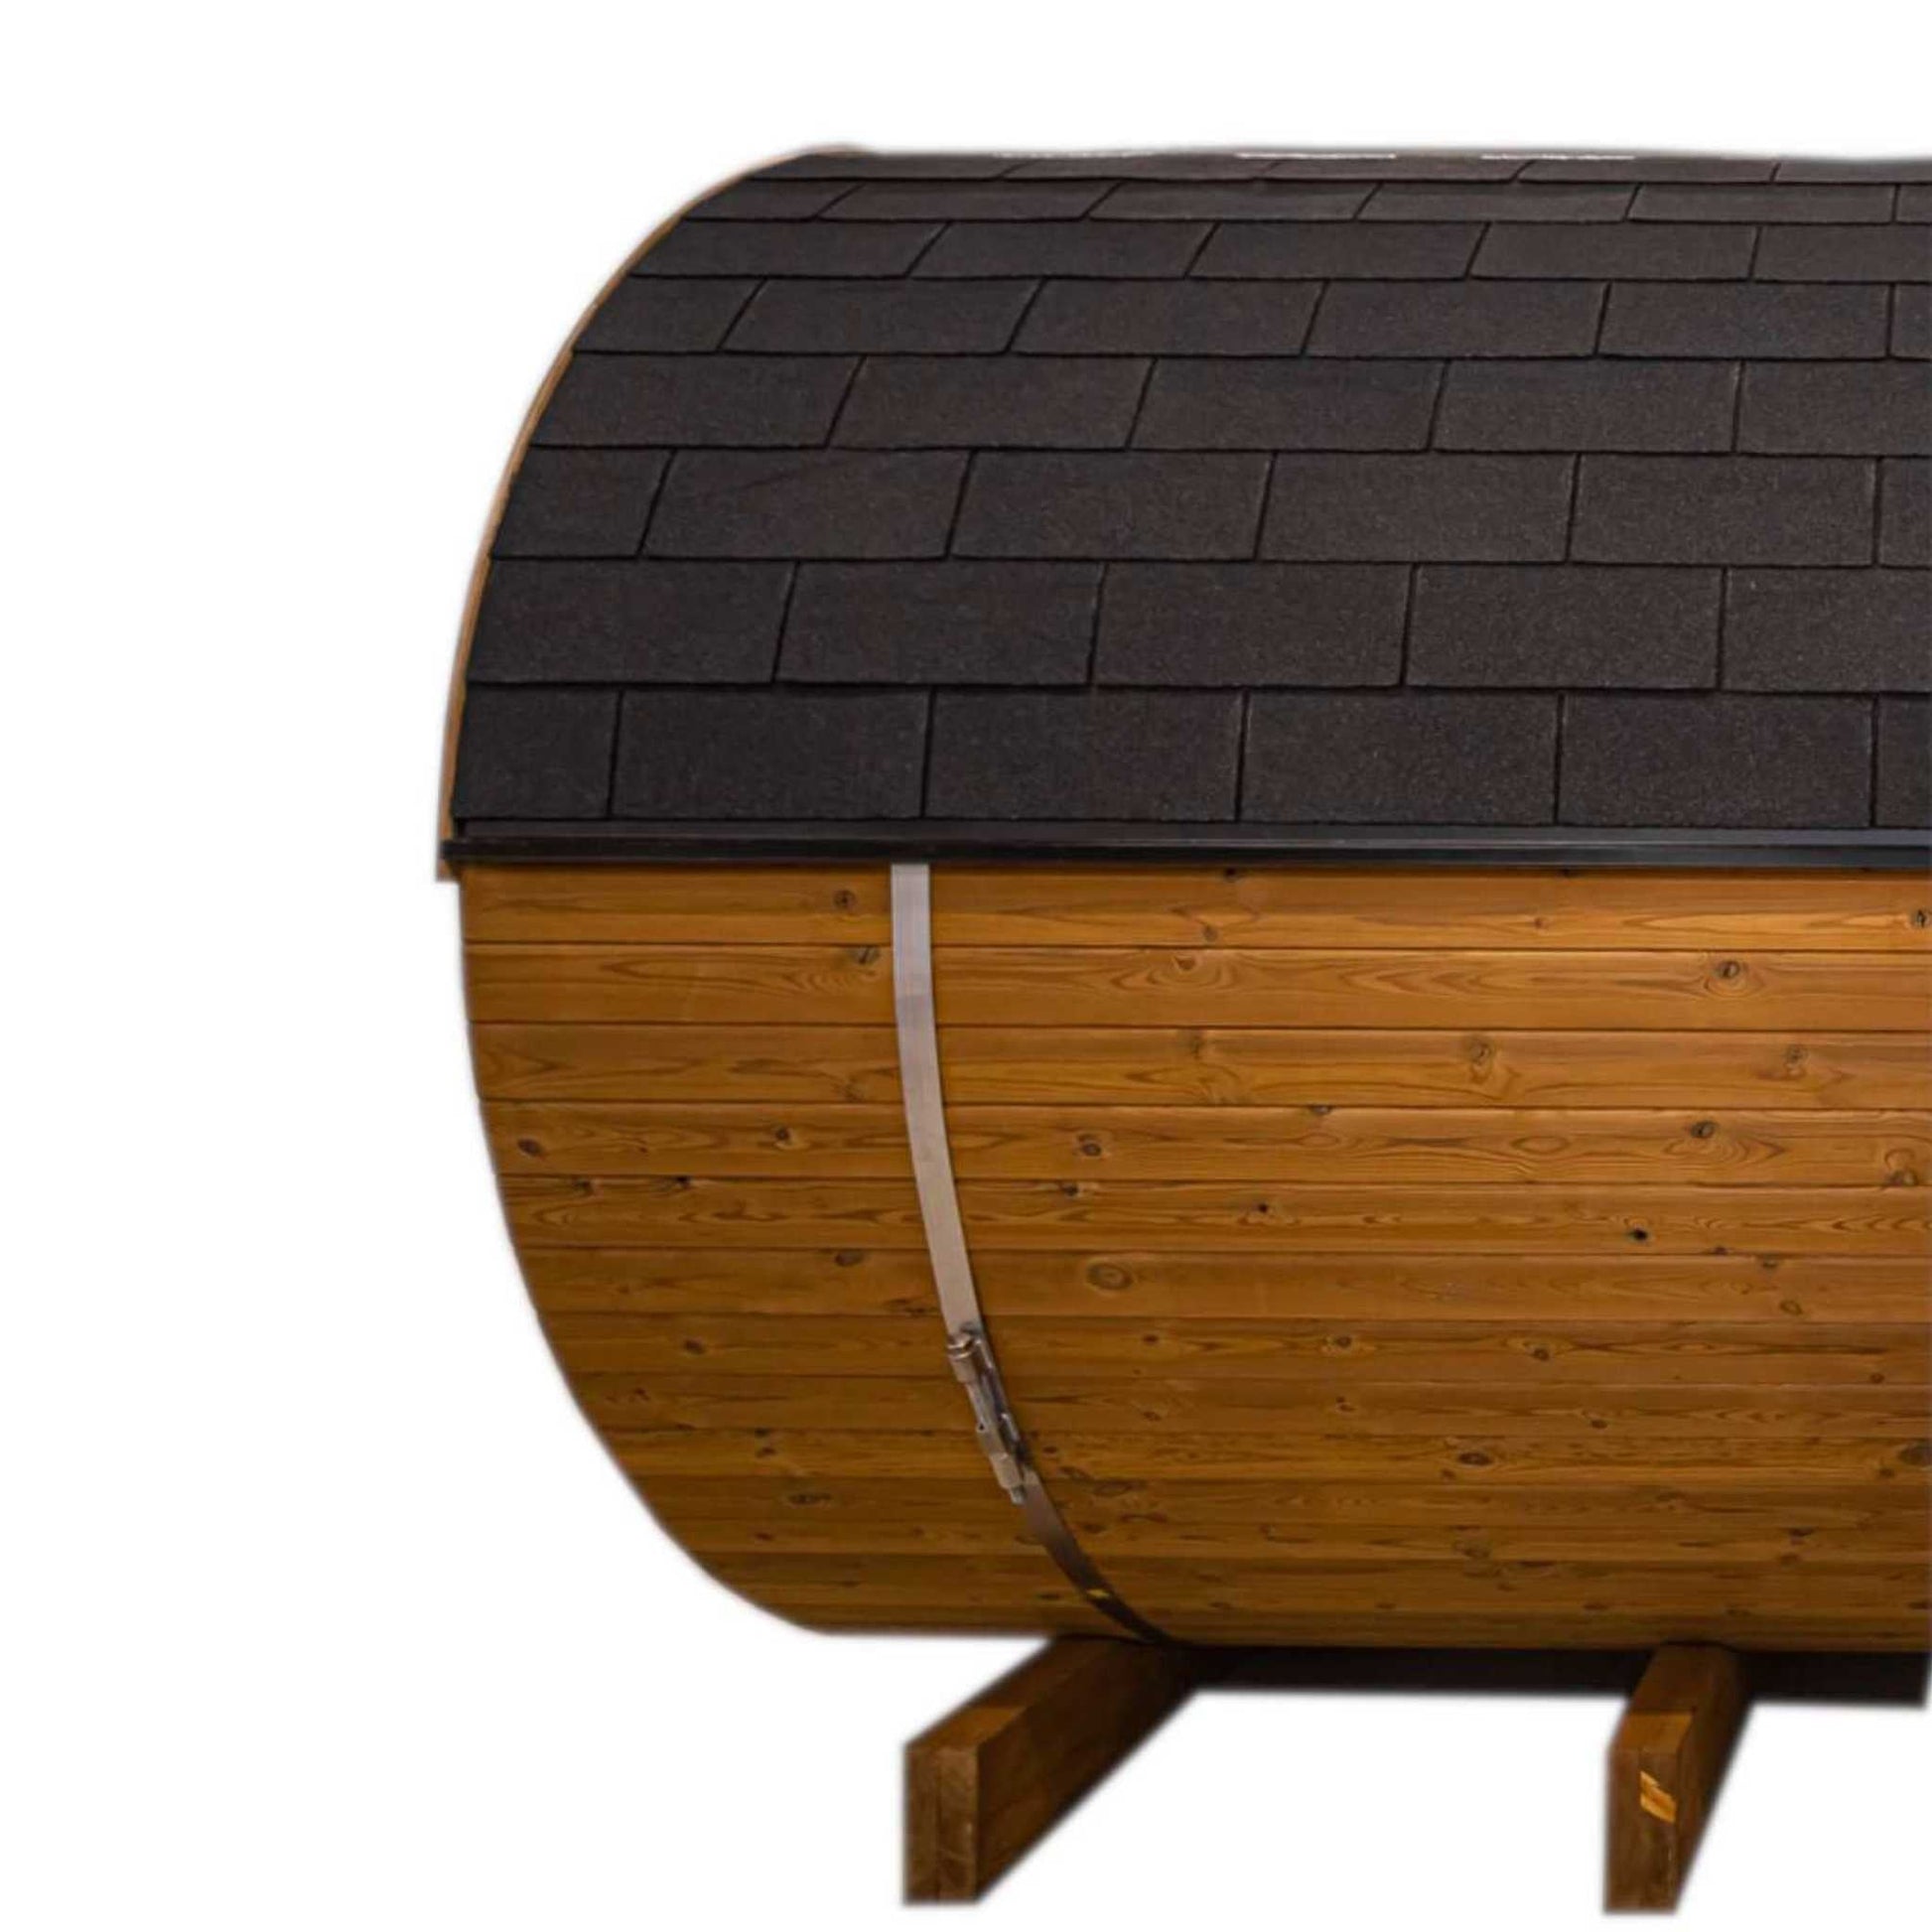 Thermo Wood Barrel Sauna - Small (L: 223 & ø: 194 cm) Barrel Sauna | Finnmark Sauna